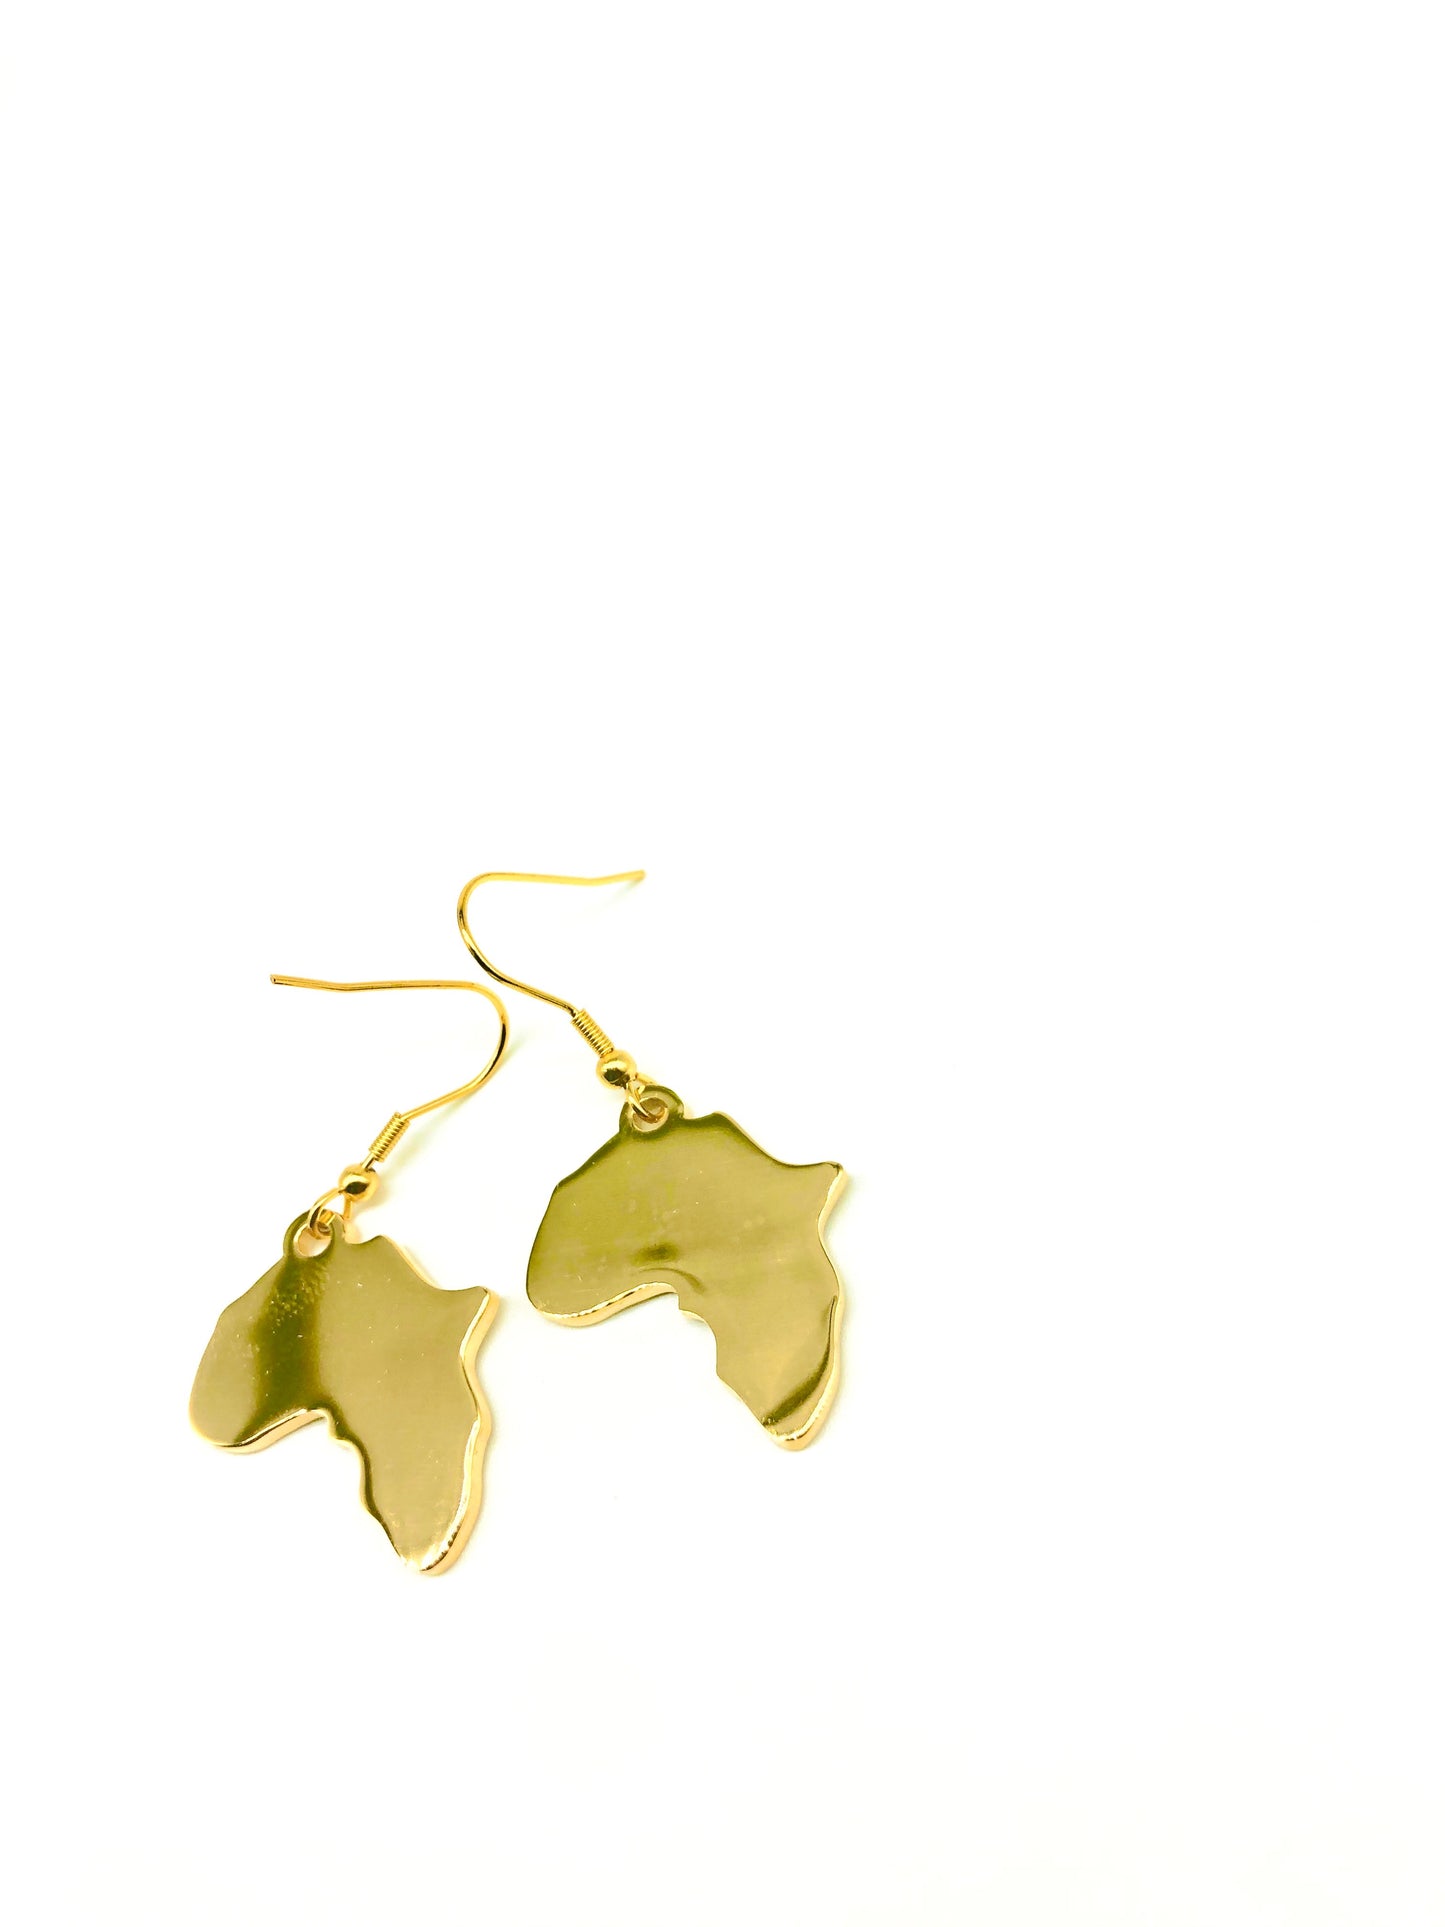 New 18k Gold "One Africa" Earrings